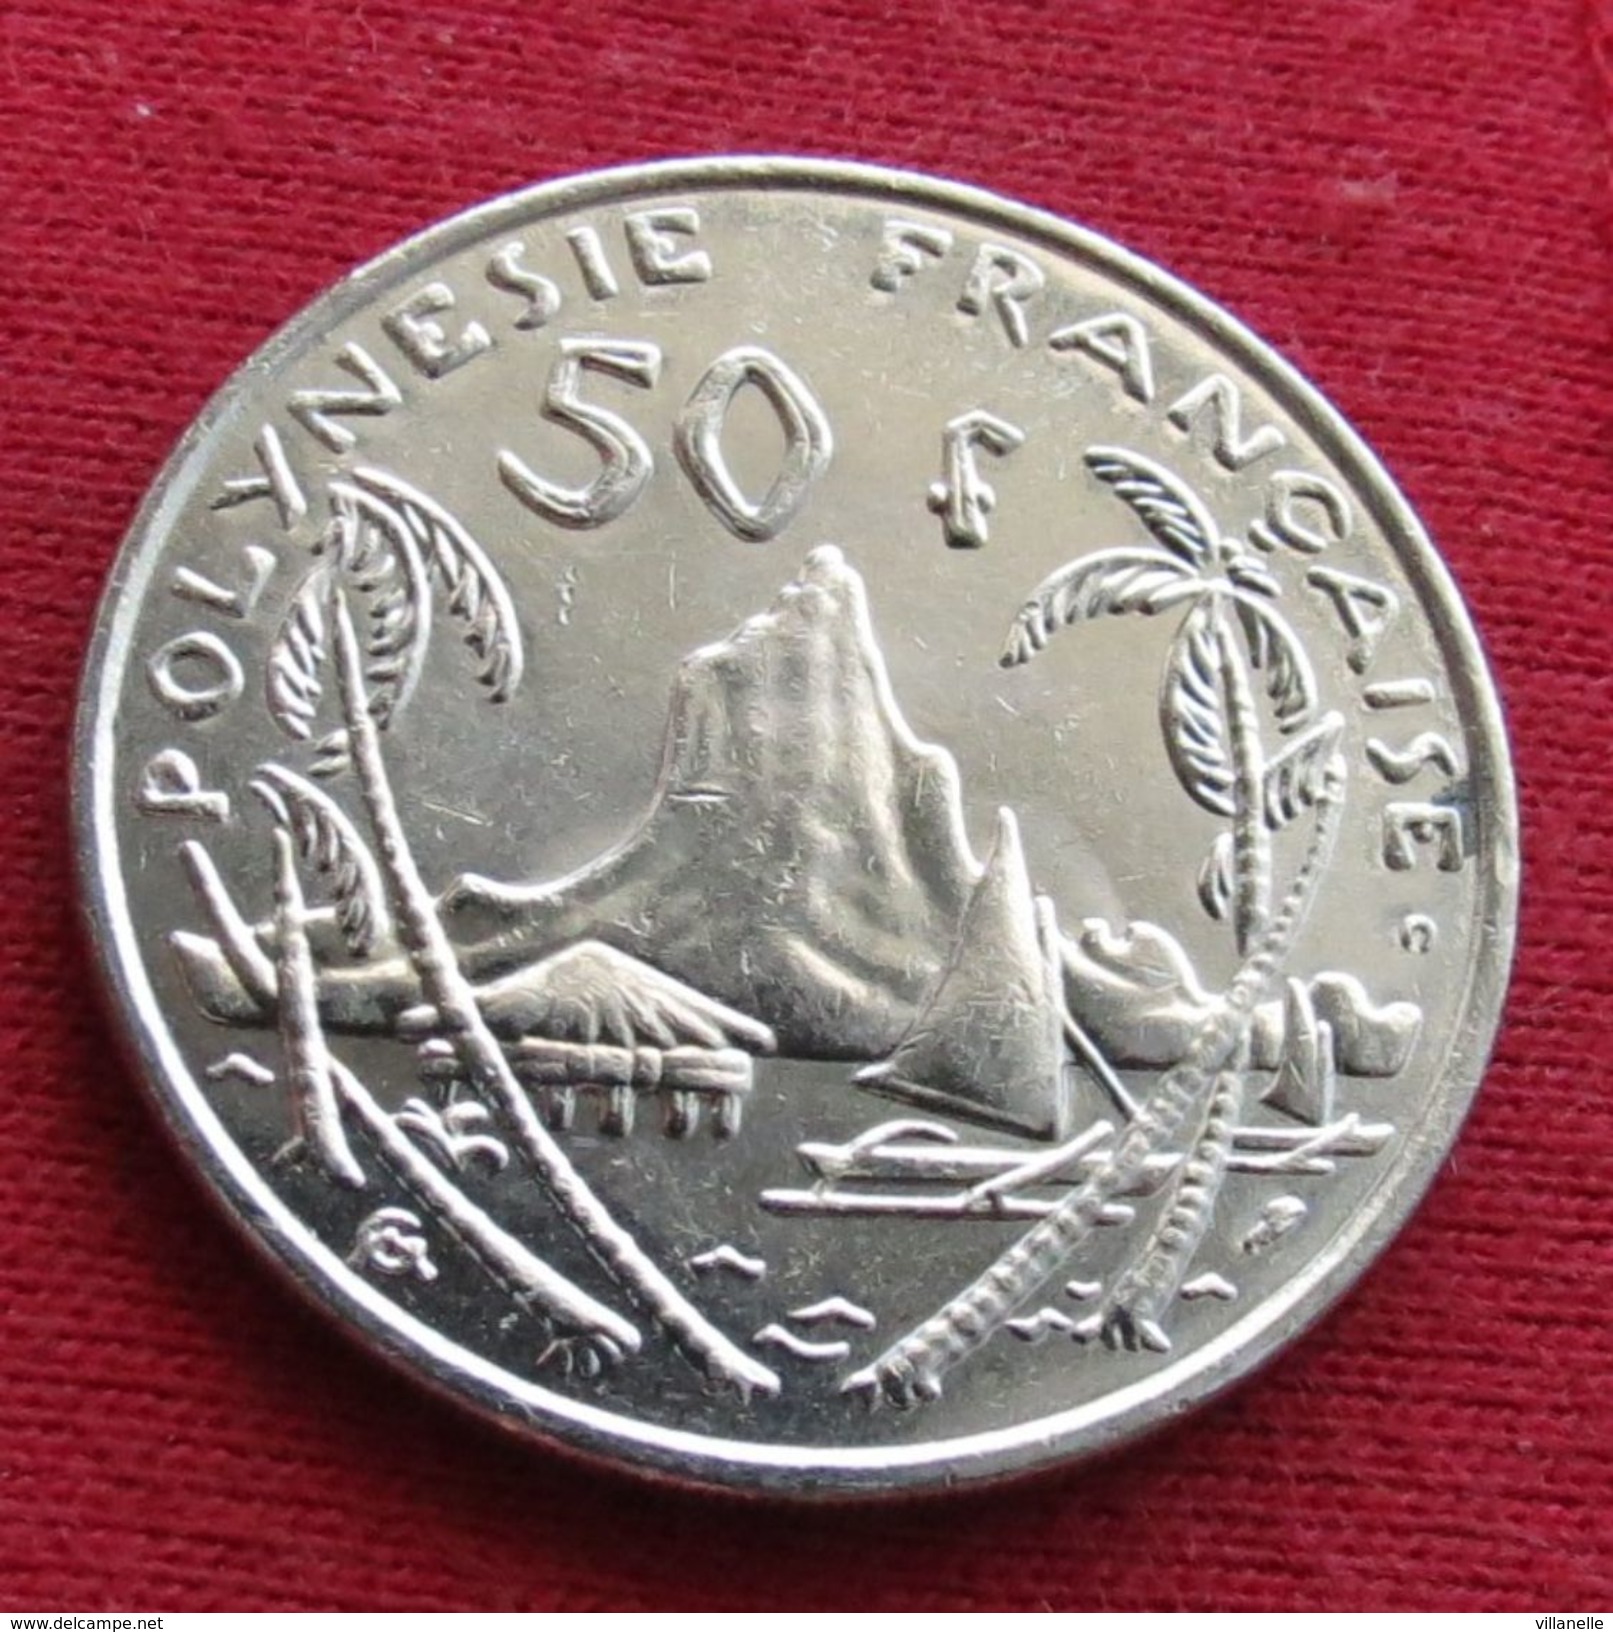 French Polynesia 50 Francs 2001 KM# 13 Polynesie Polinesia - Polynésie Française